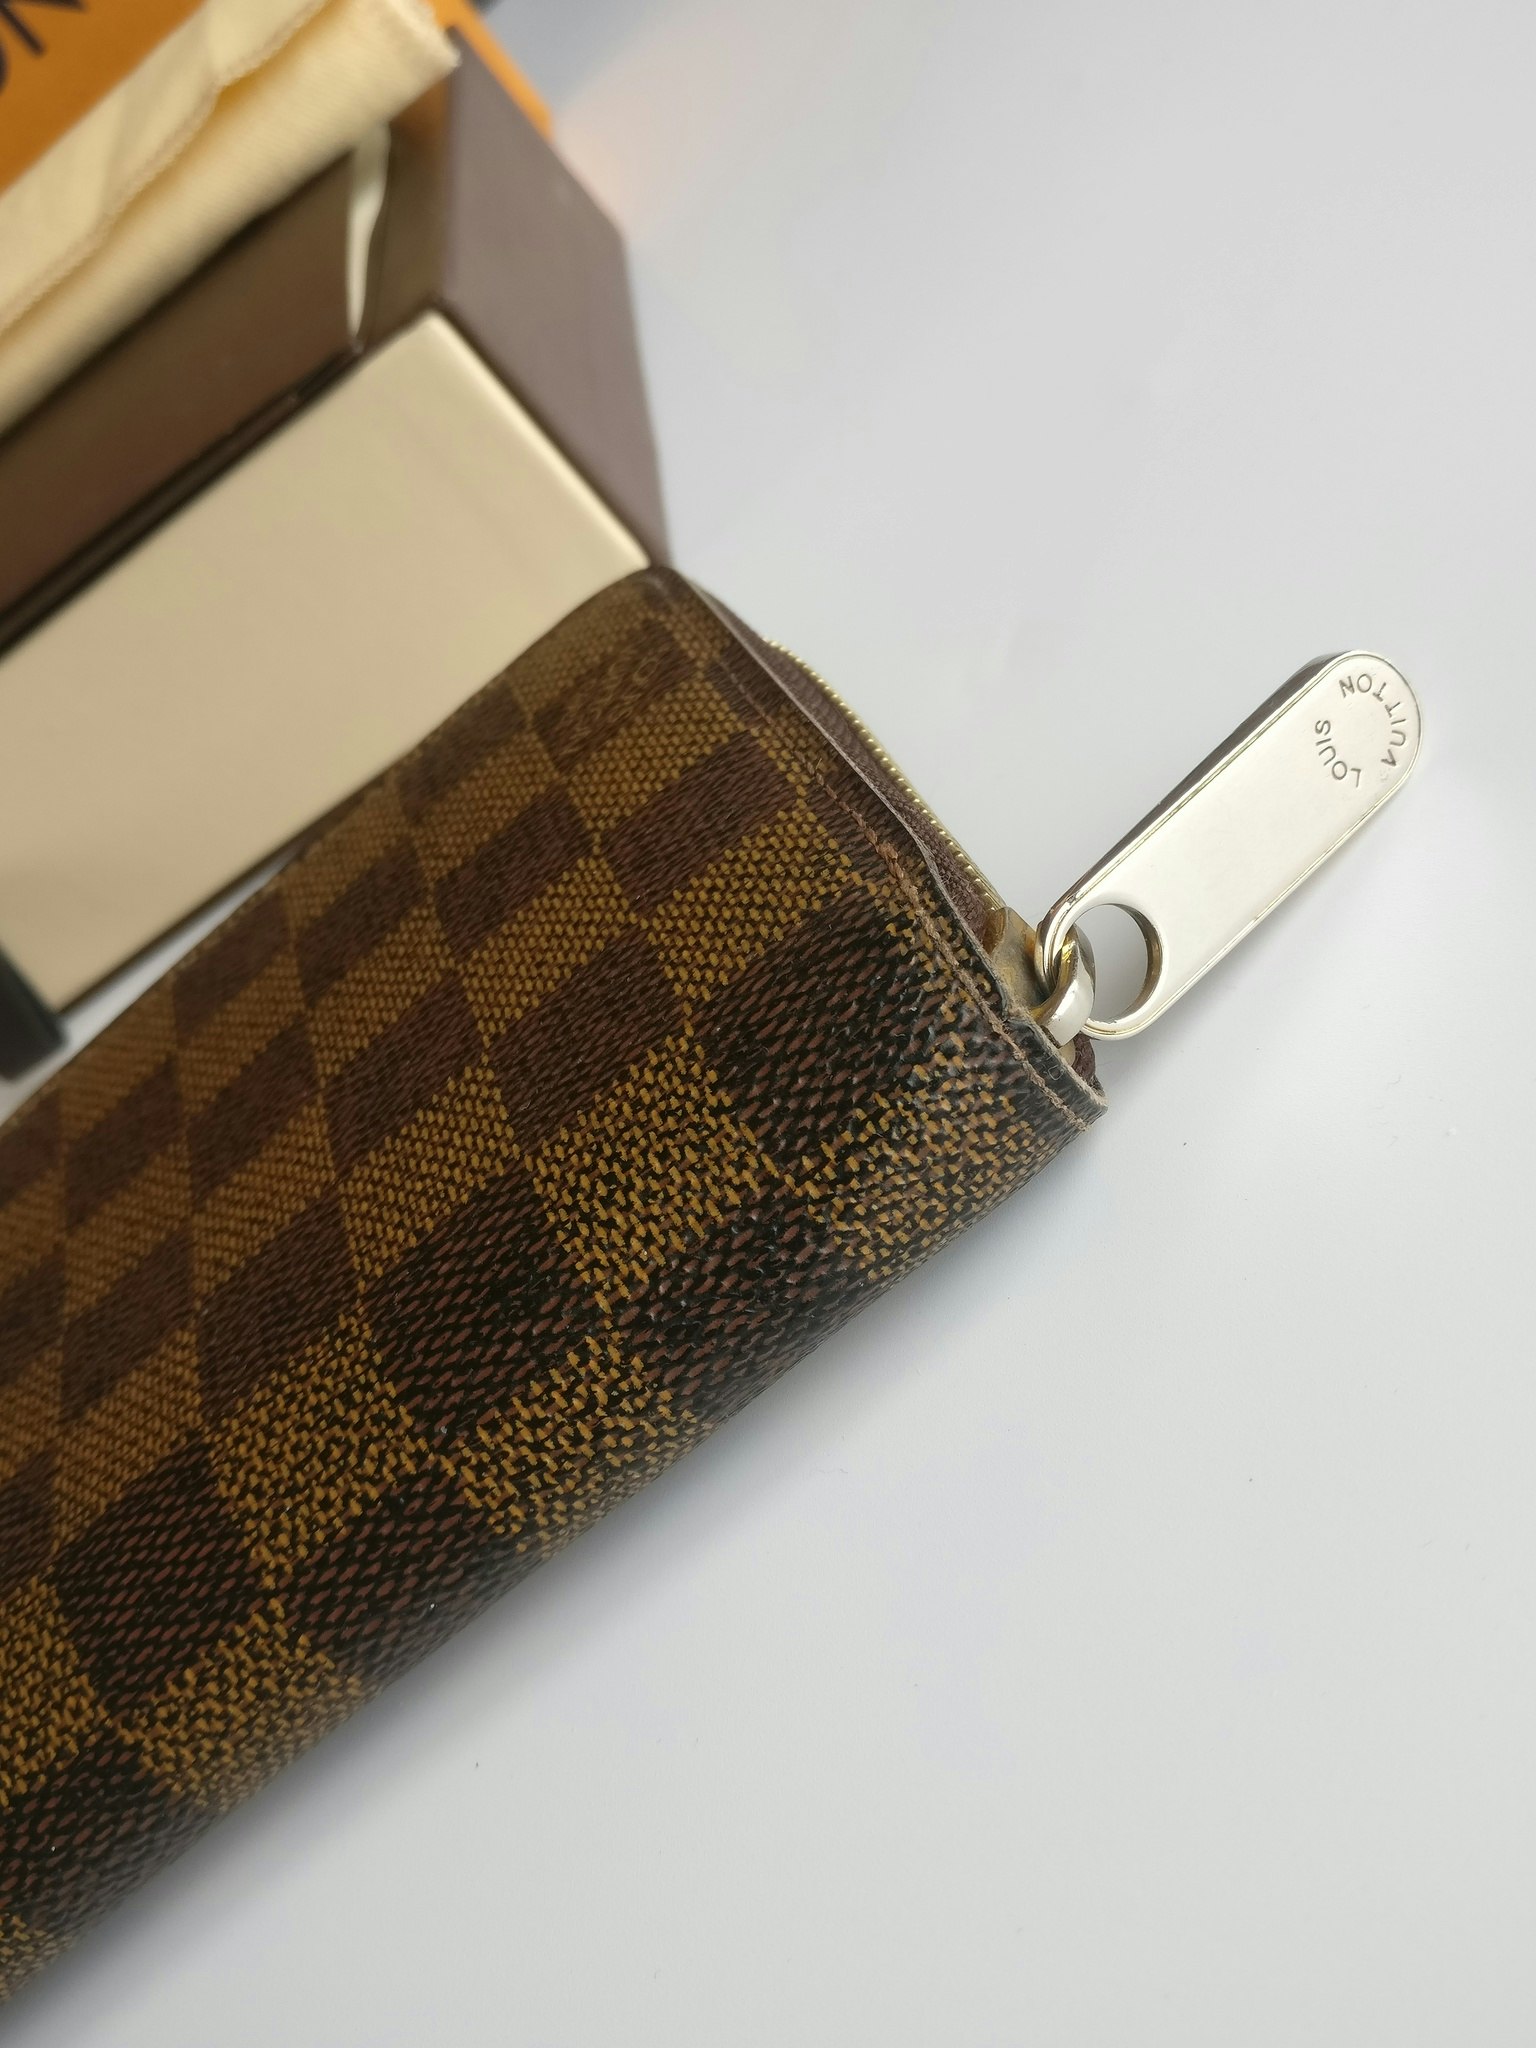 Louis Vuitton Zippy Wallet Damier Ebene Canvas ○ Labellov ○ Buy